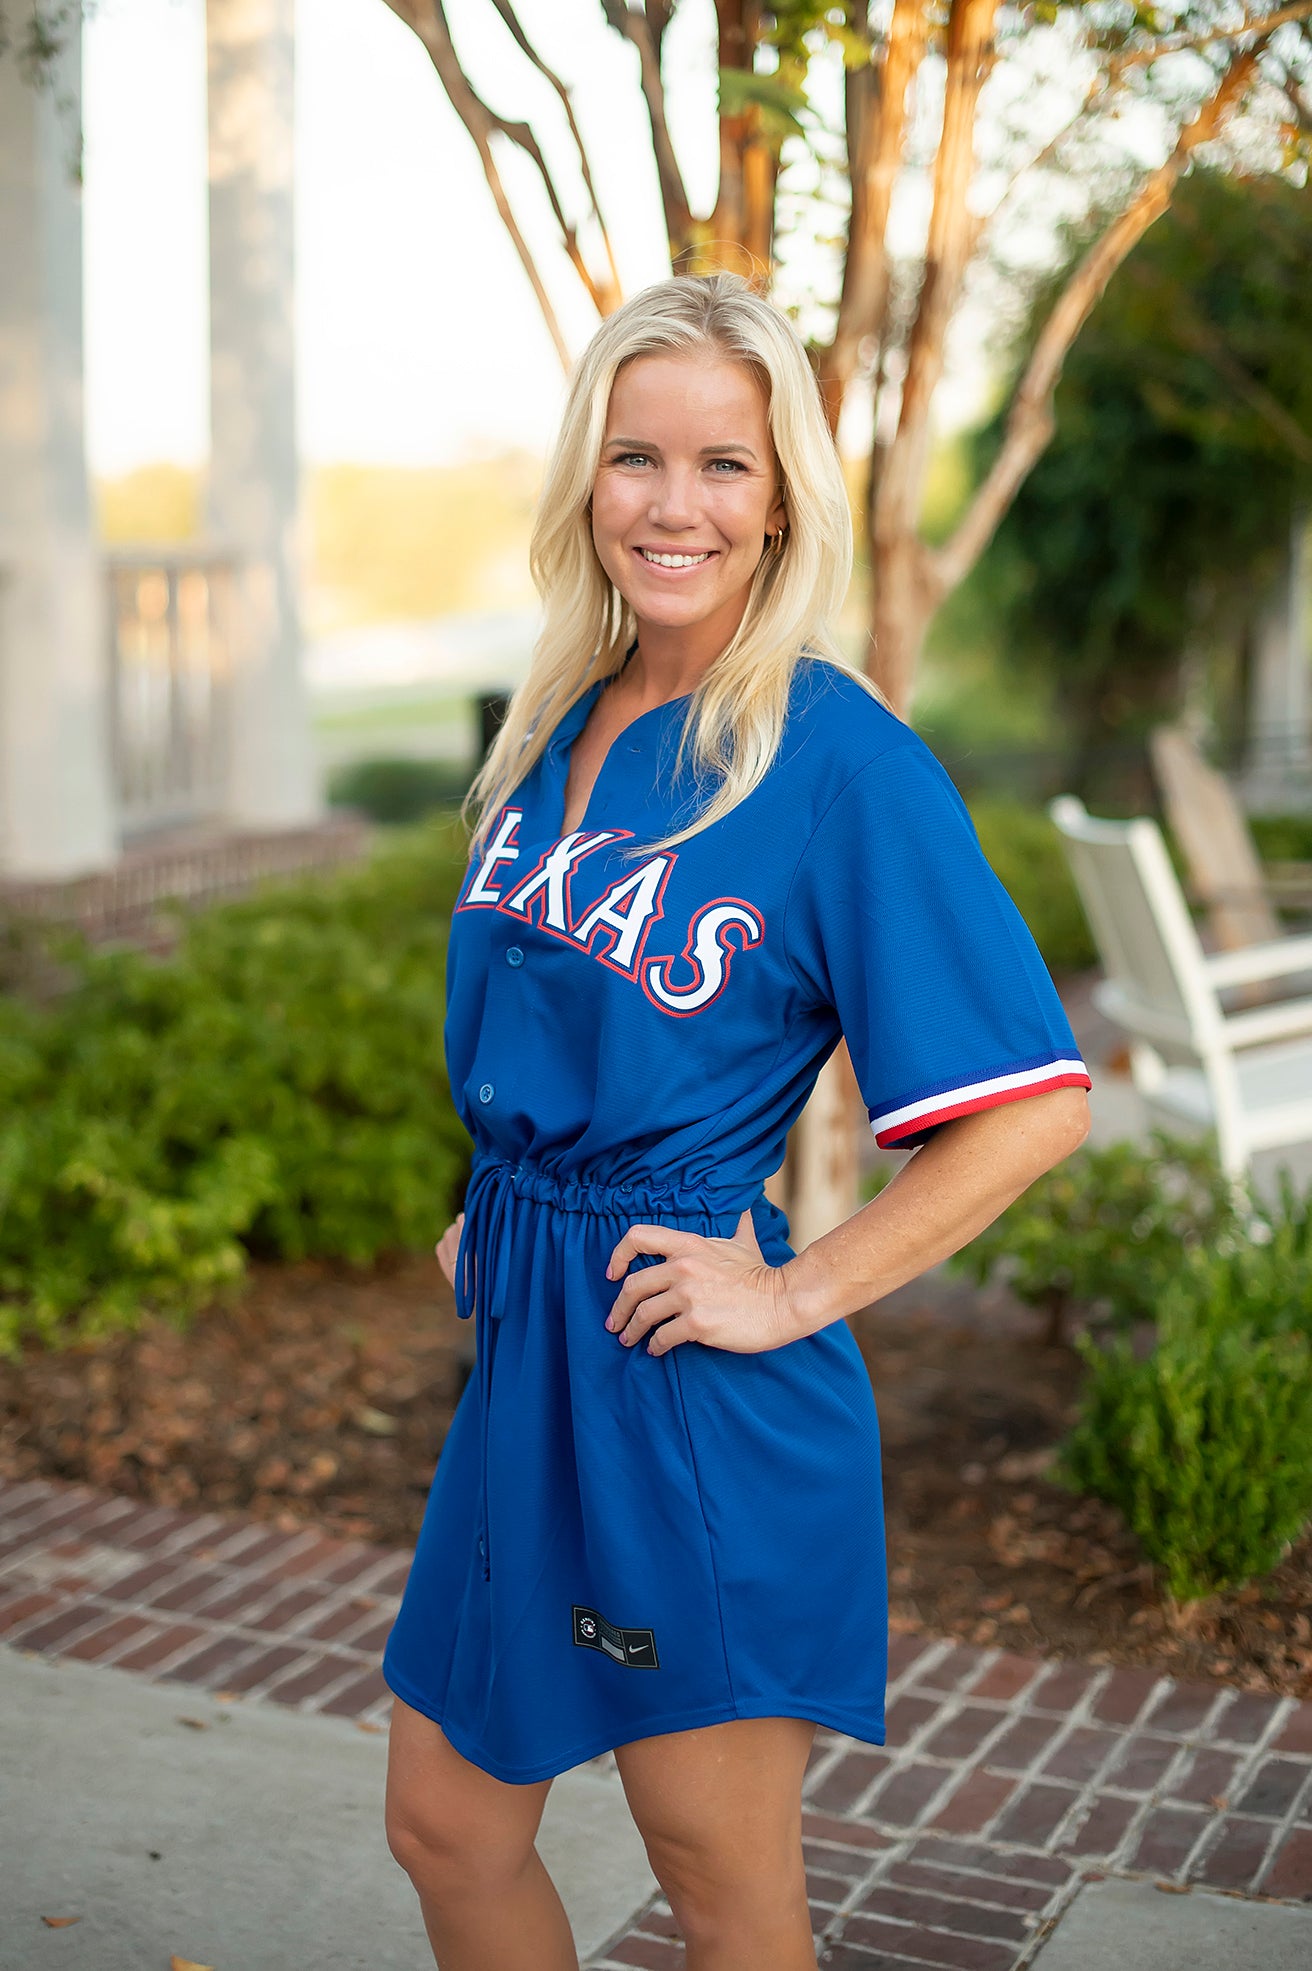 Texas Rangers Women 